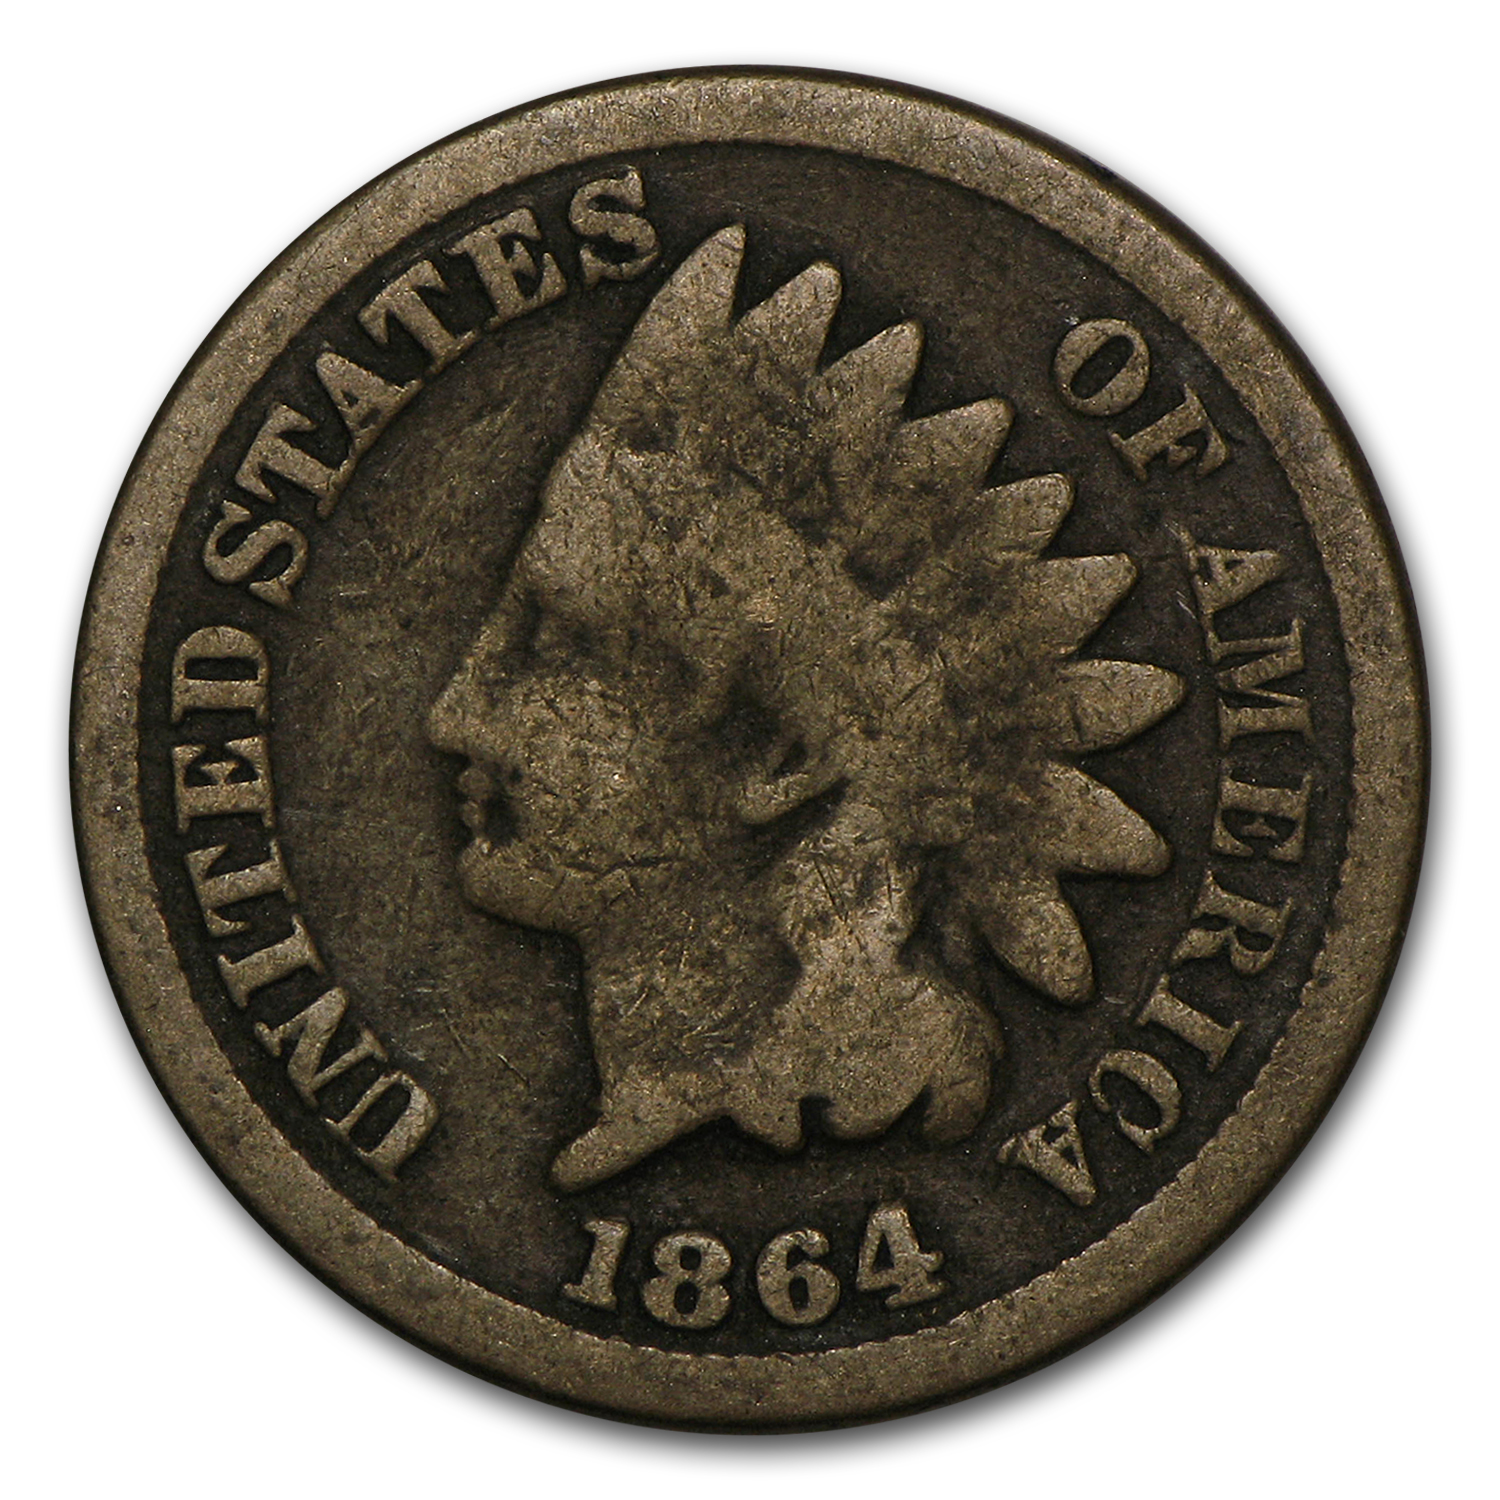 Buy 1864 Indian Head Cent Copper-Nickel Good